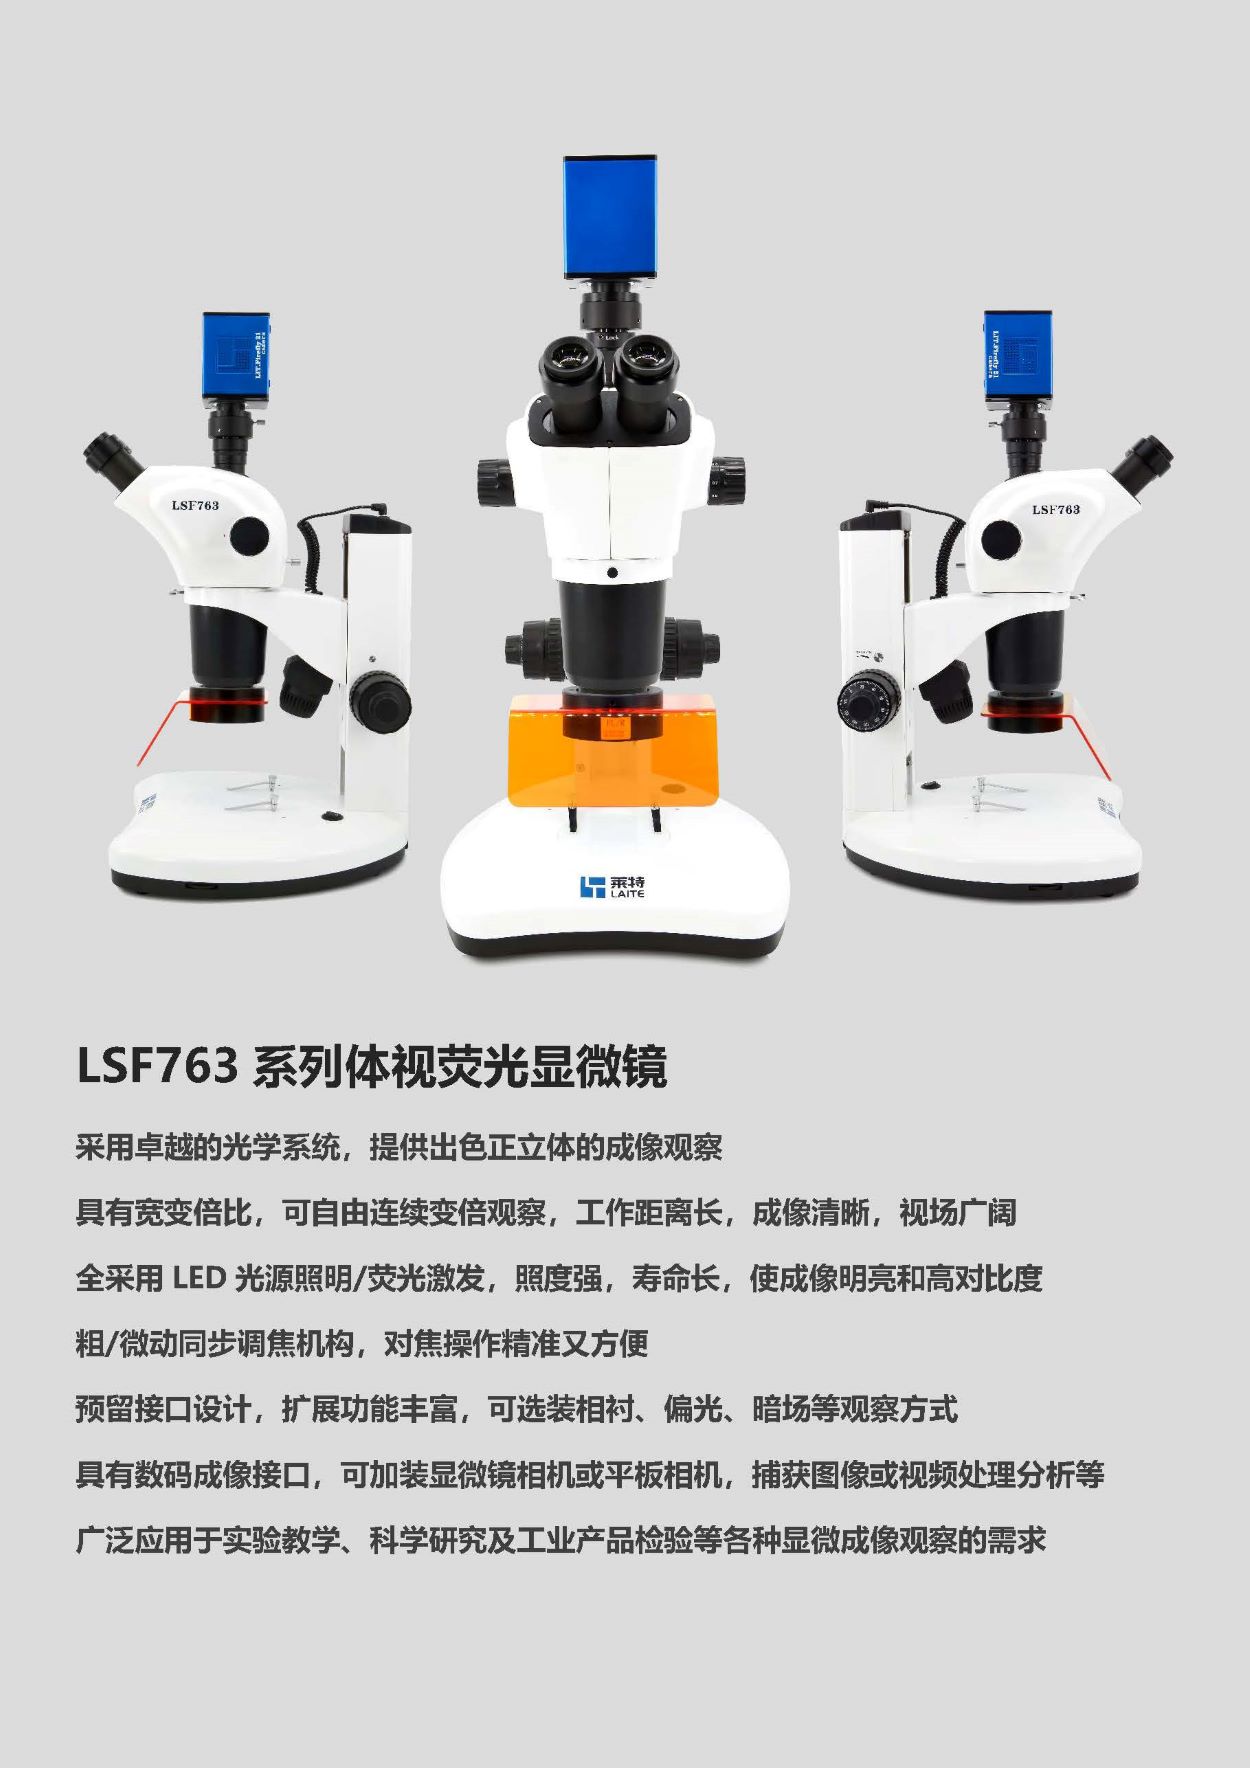 荧光显微镜 荧光体视显微镜 体视荧光显微镜Laite莱特LSF763